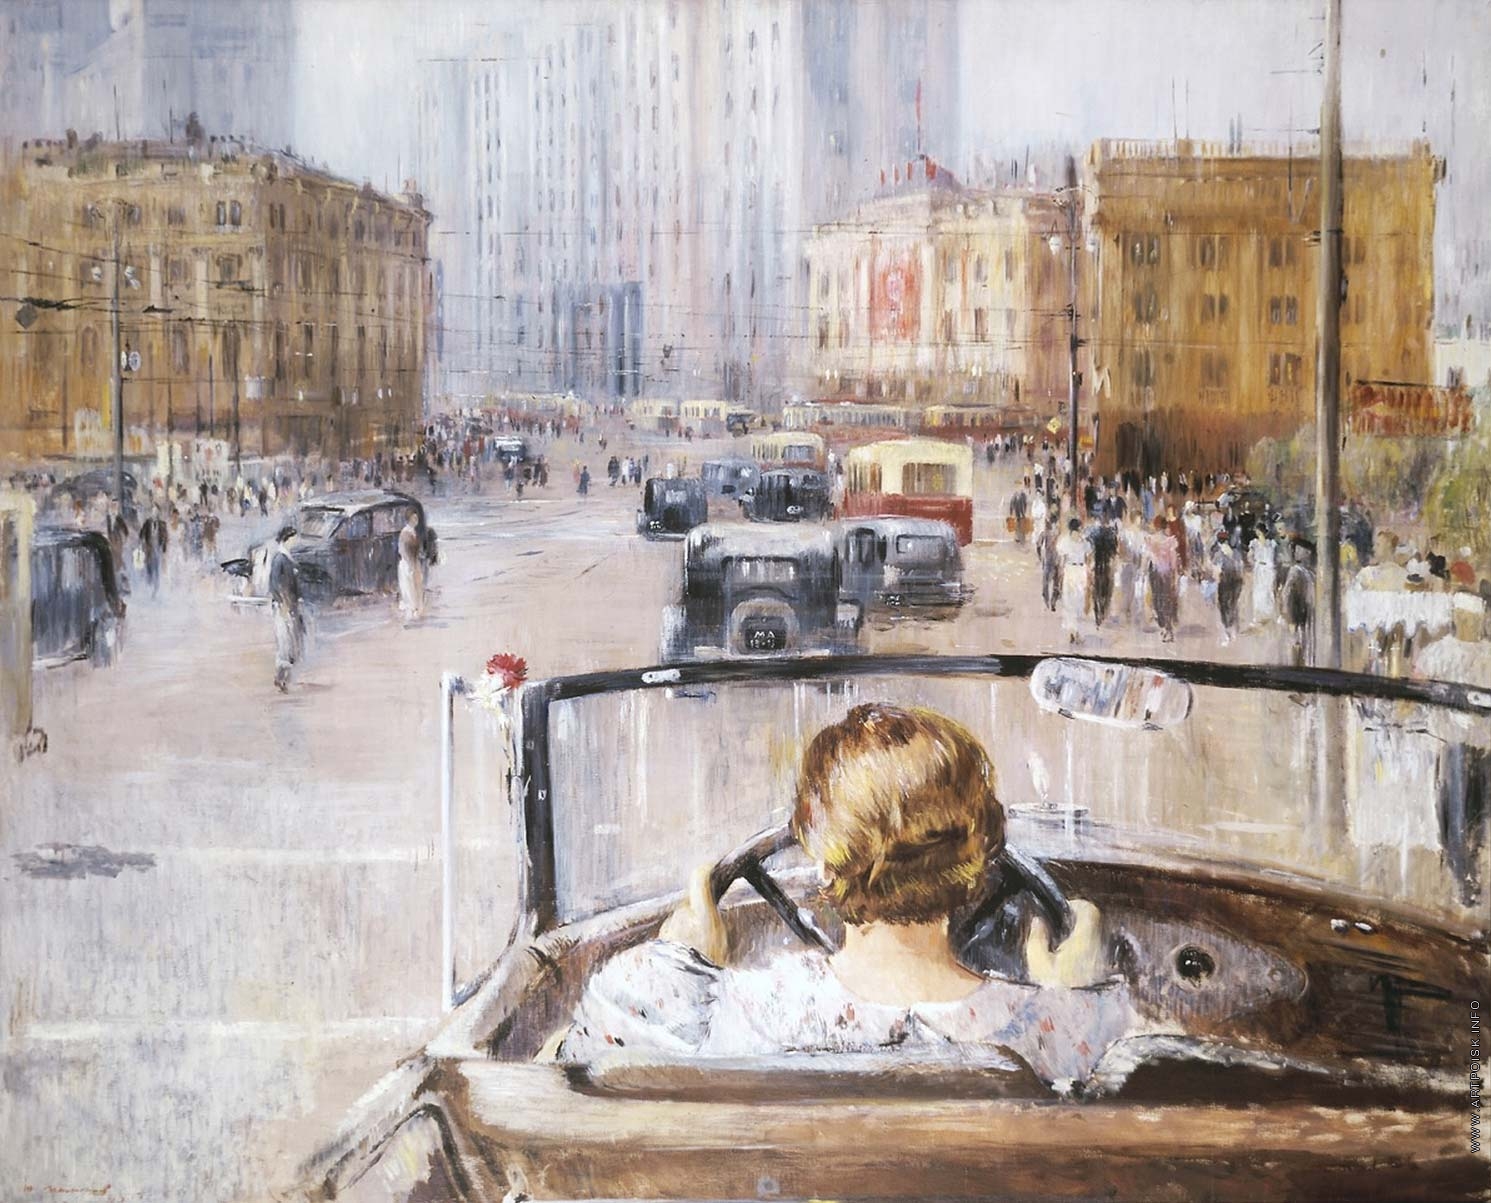 Юрий Иванович Пименов. "Новая Москва". 1937. Третьяковская галерея, Москва.